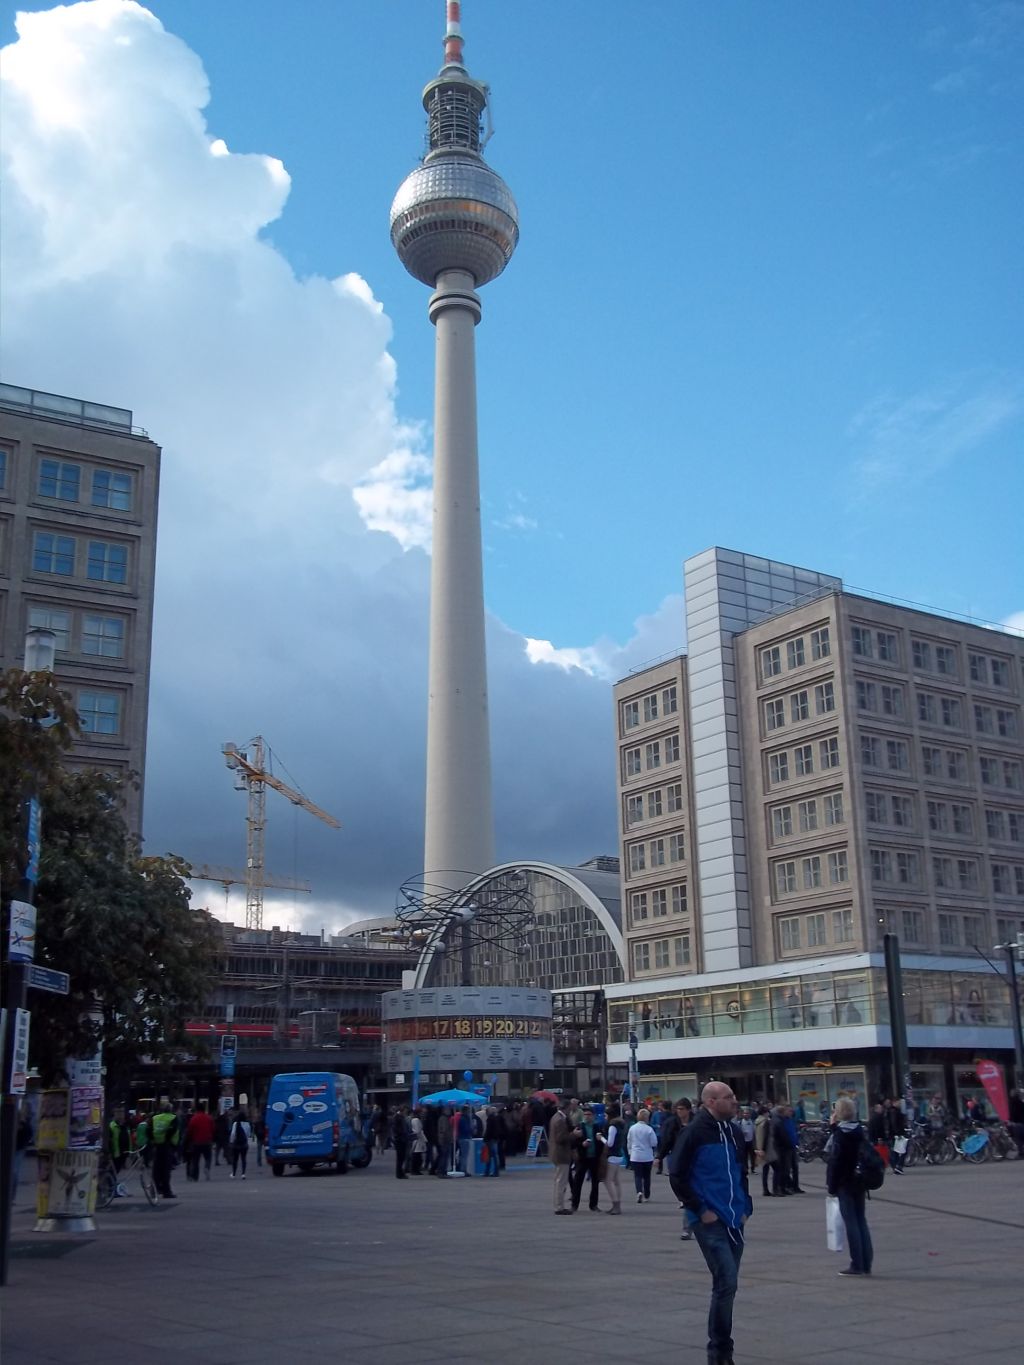 Berlin Alexanderplatz,World Time Clock, tour cycling partner wanted